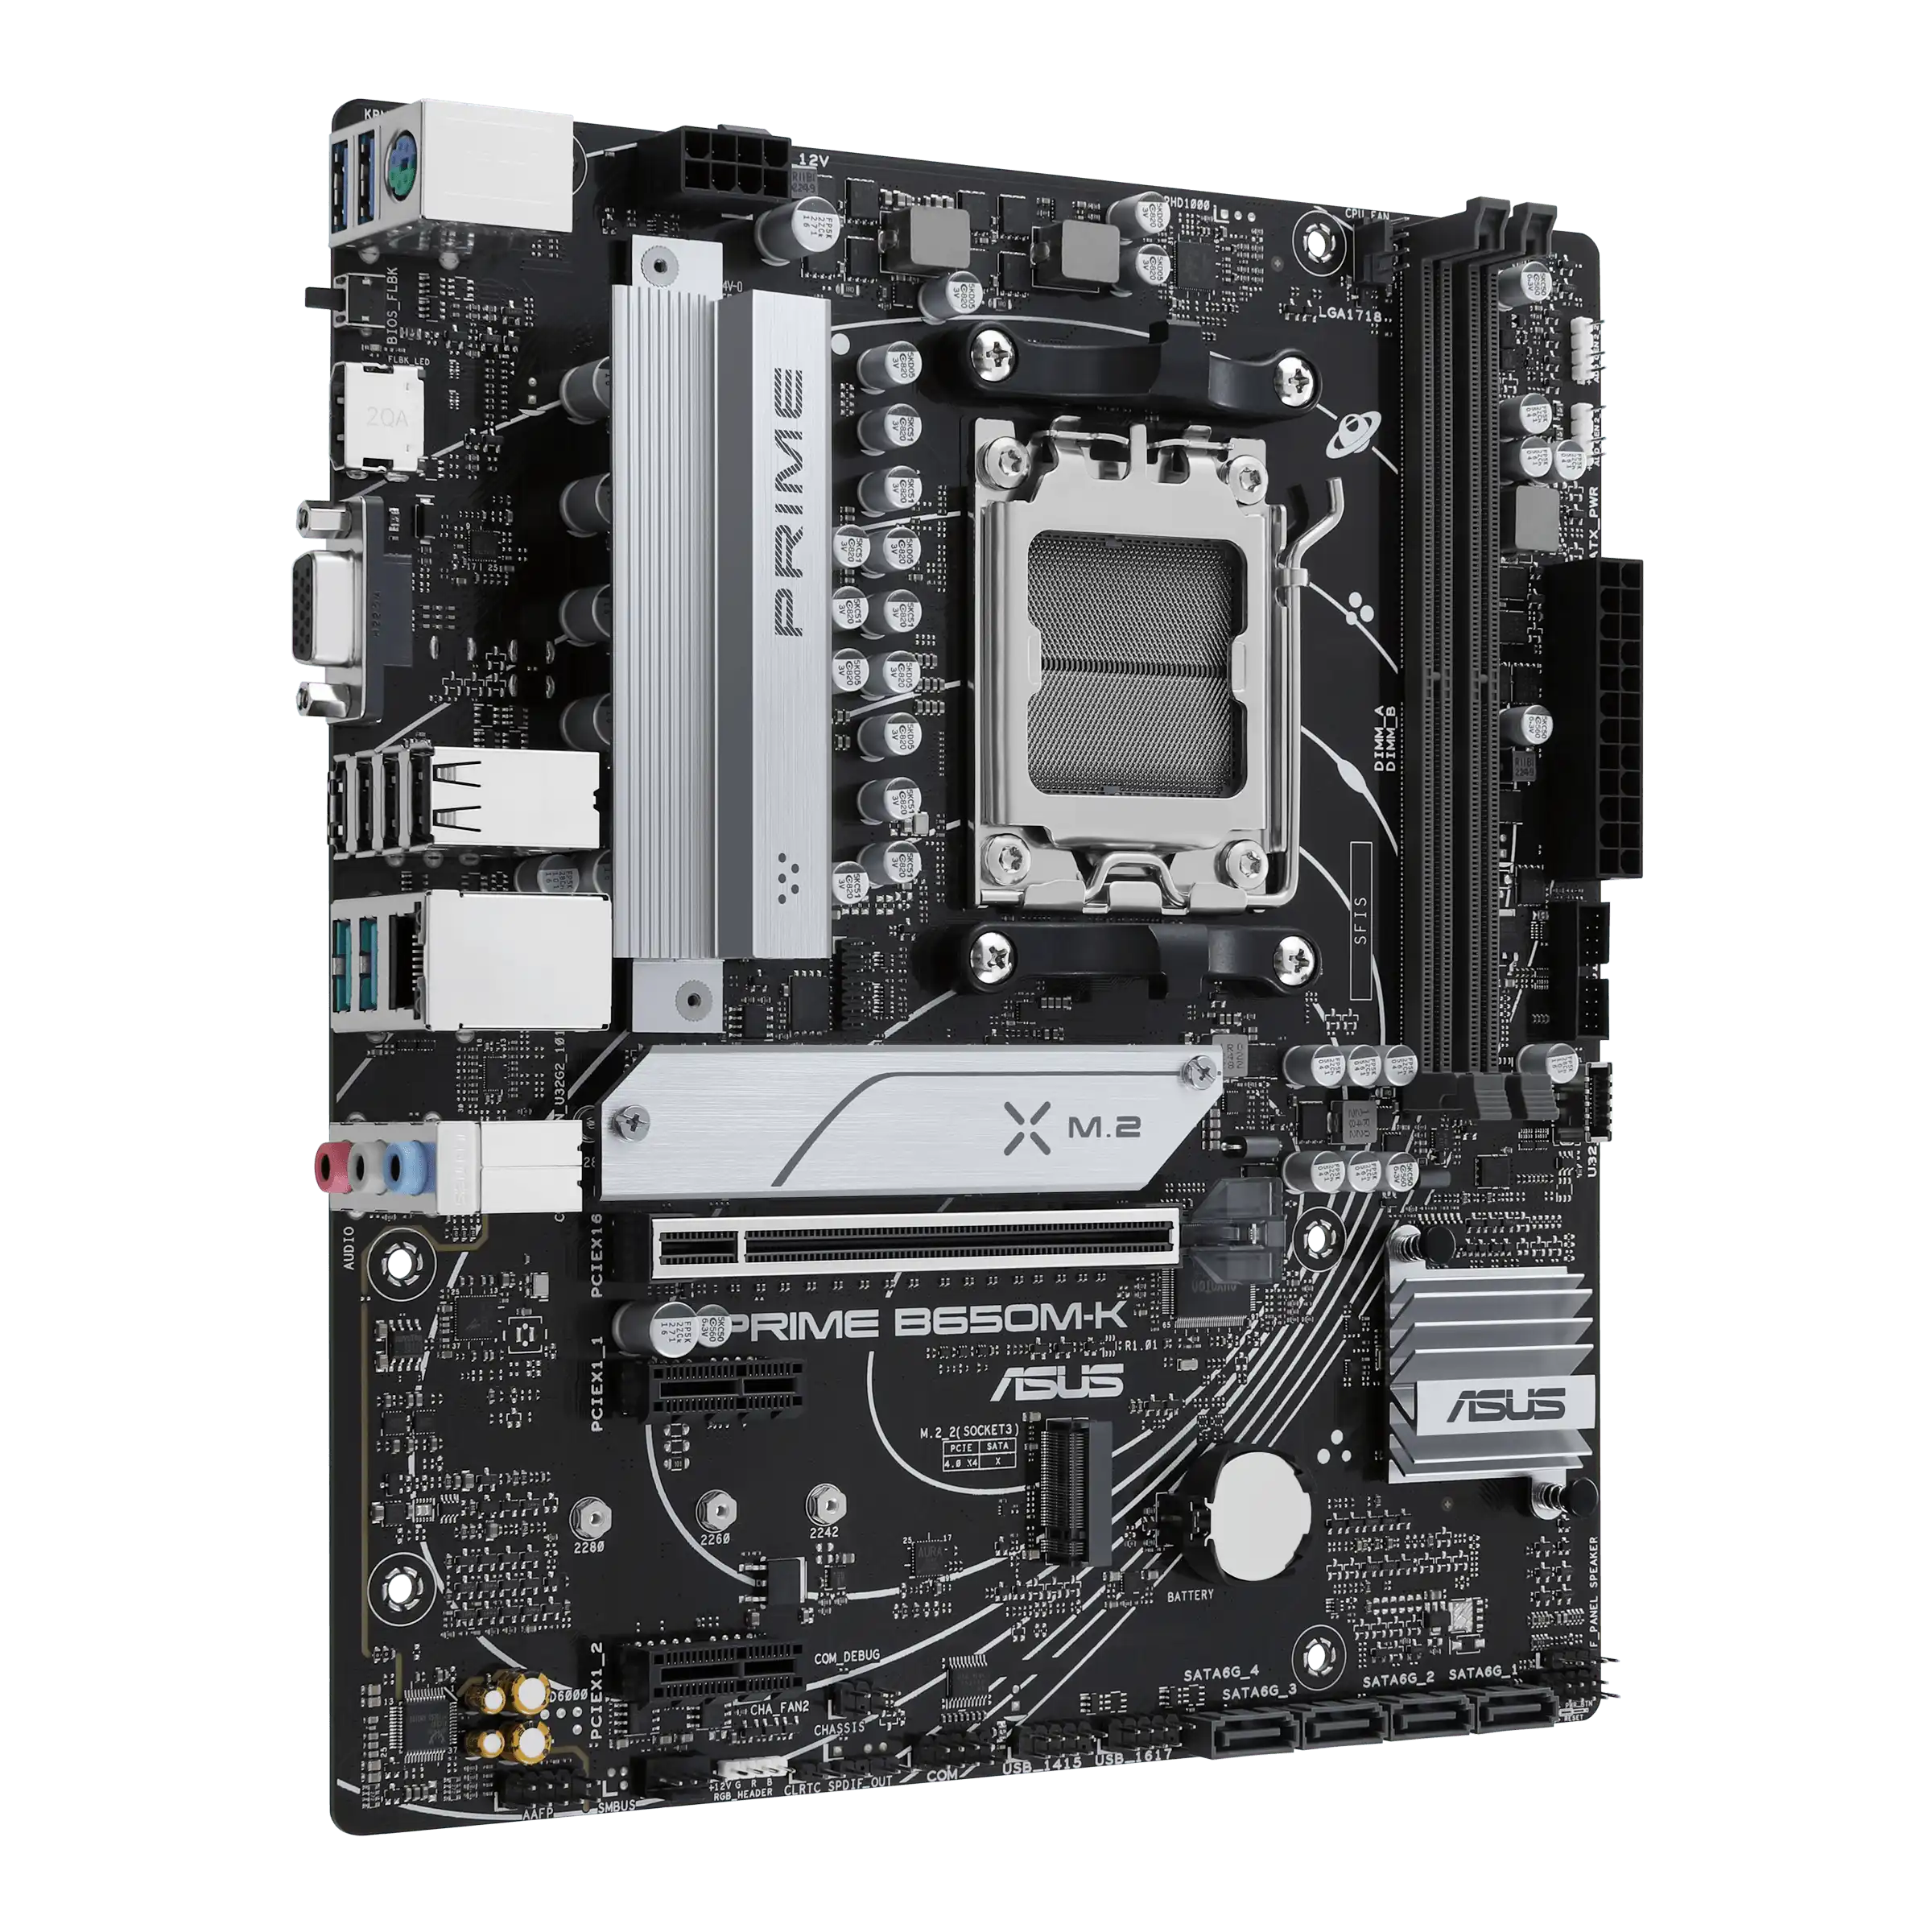 ASUS PRIME B650M-K AMD 600 Series mATX Motherboard | 90MB1F60-M0EAY0 |